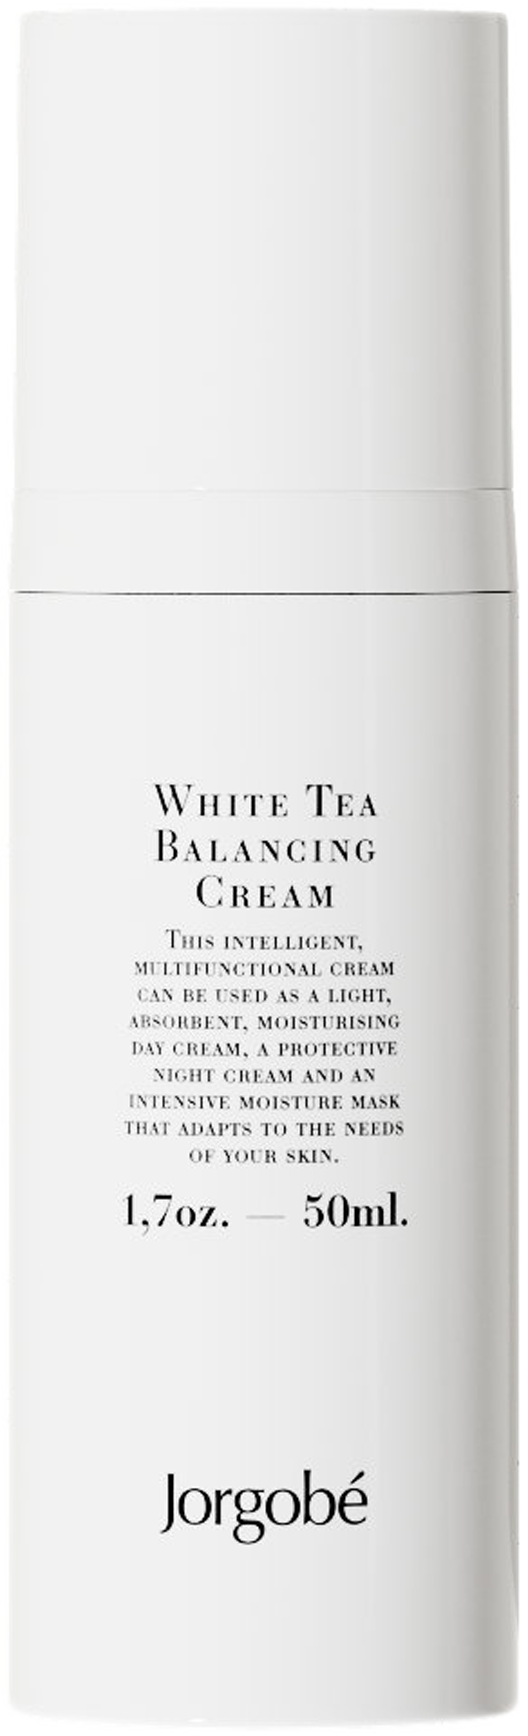 JorgObé White Tea Balancing Cream 50ml